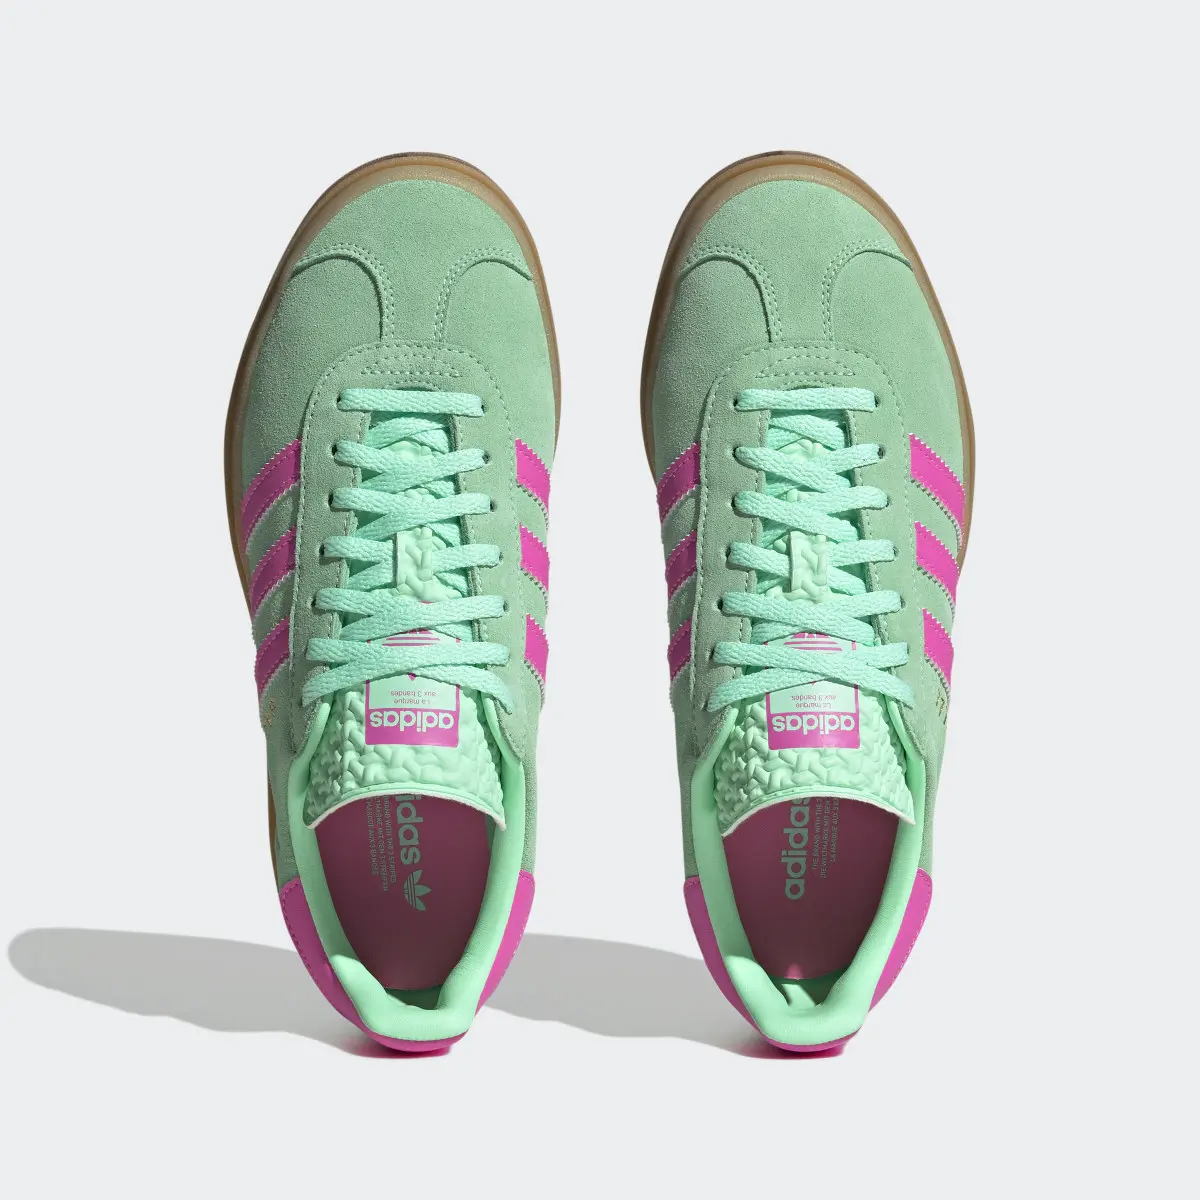 Adidas Gazelle Bold Shoes. 3